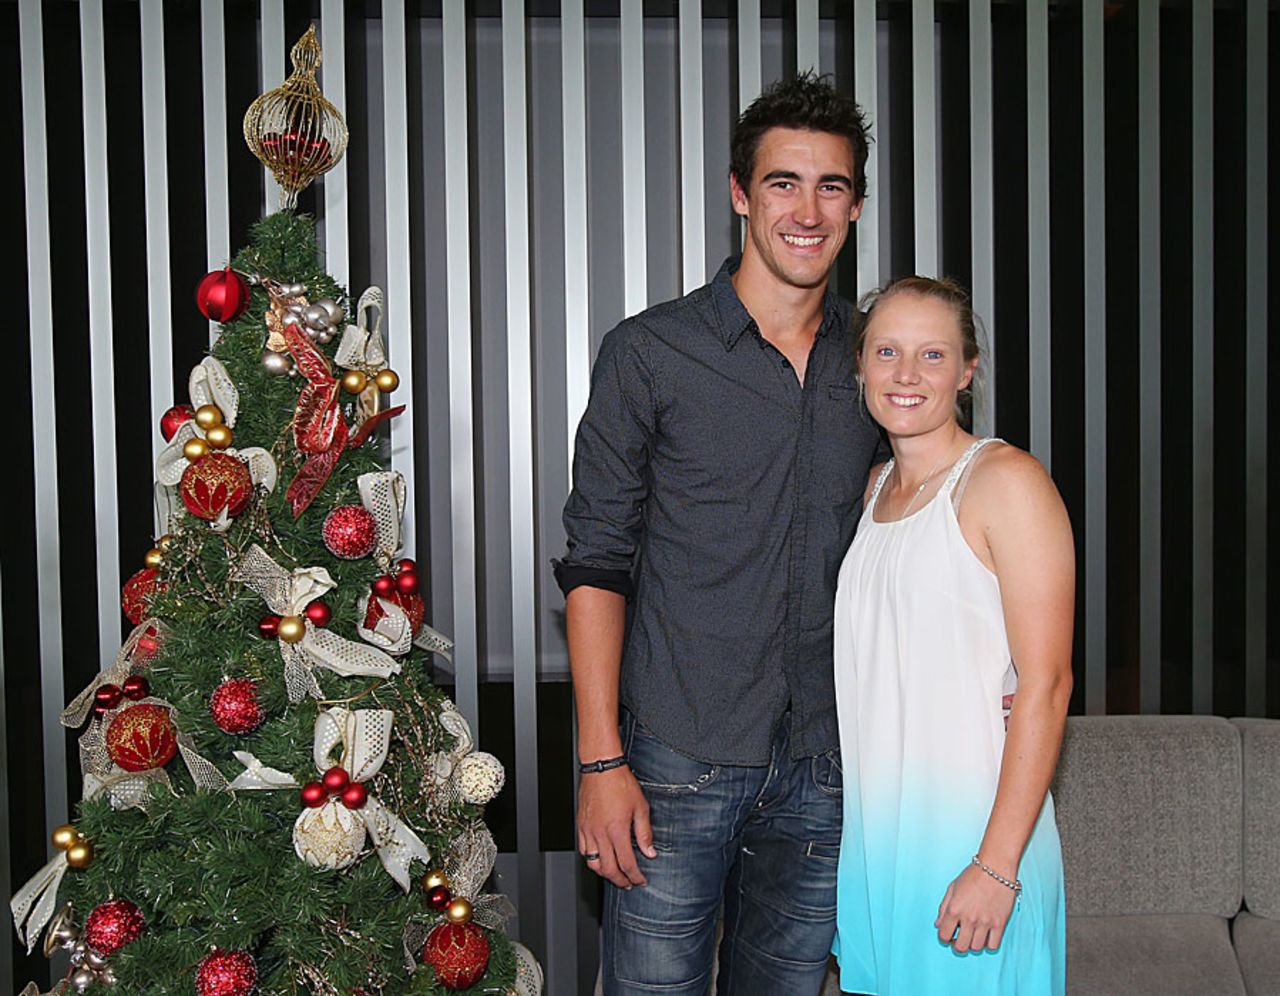 Mitchell Starc with his girlfriend, Australia Women cricketer Alyssa Healy, Melbourne, December 25, 2012